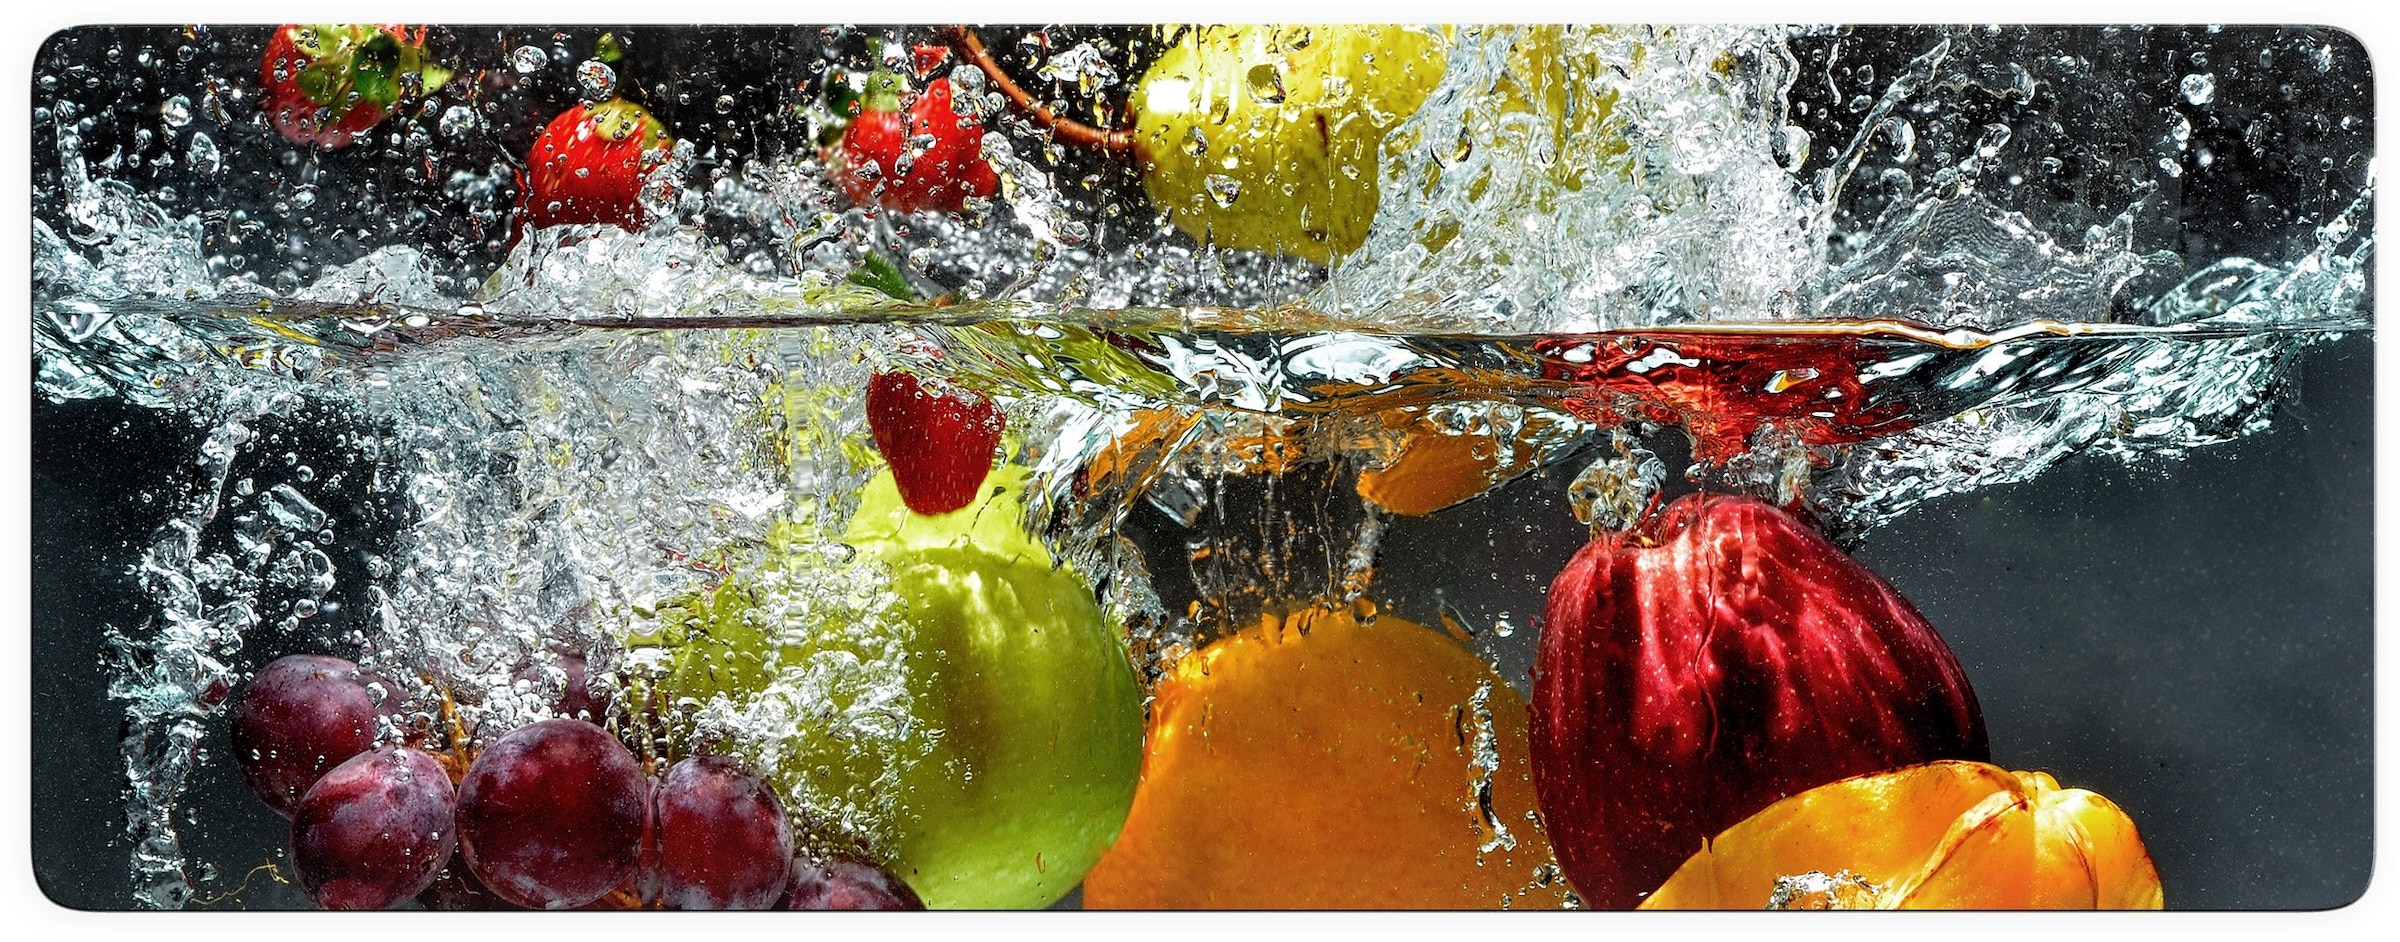 Grössen »Erfrischendes kaufen in 2 Wall-Art Glasbild Obst«,